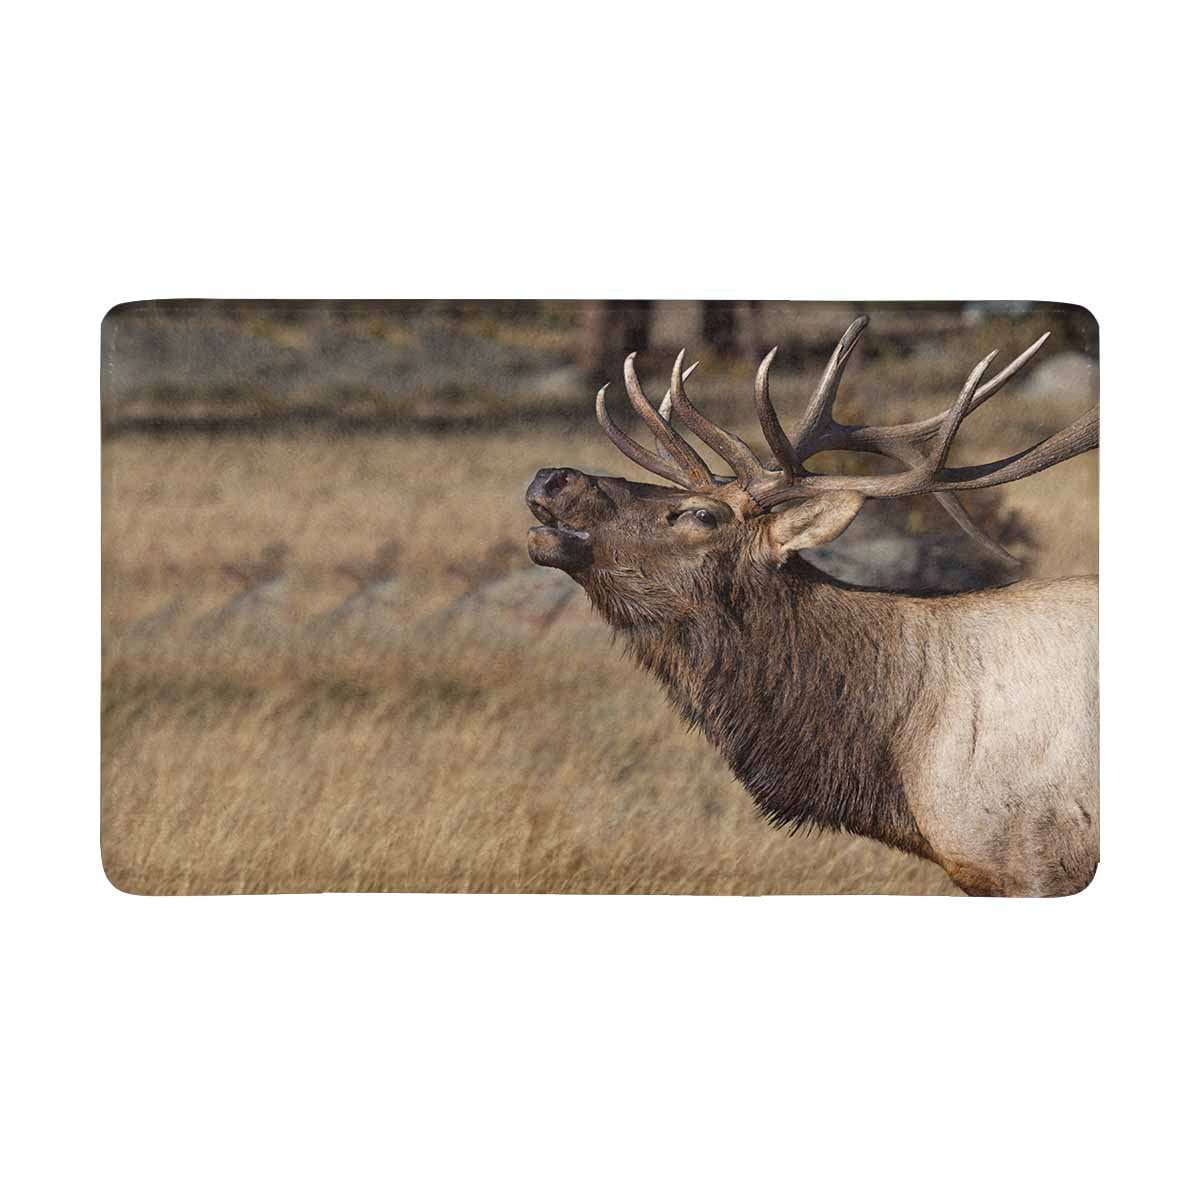 Wild Elk in the Rocky Mountains Bathroom Rug Non-Slip Floor Door Mat 16x24" 